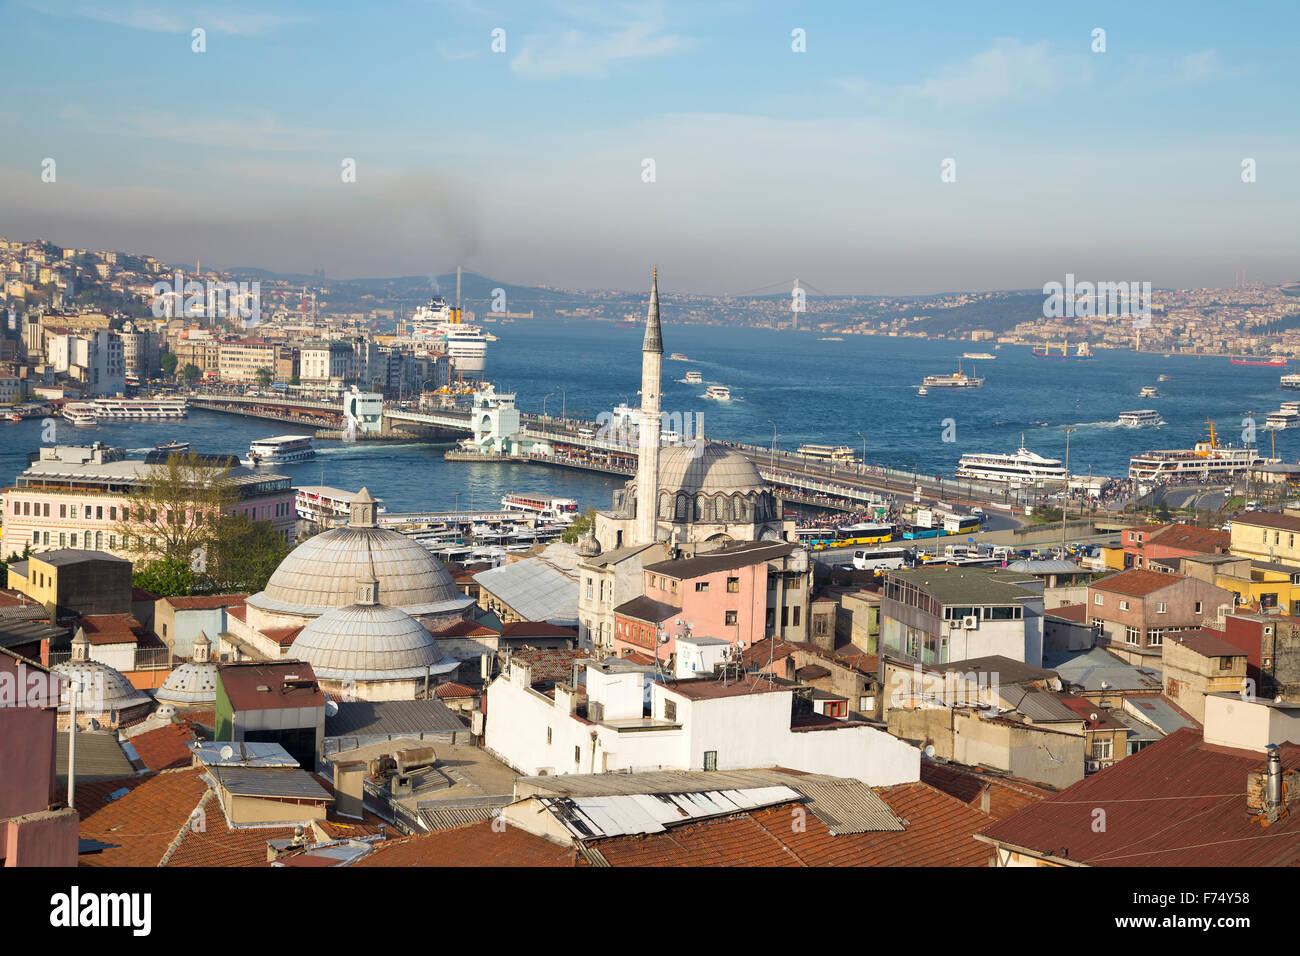 Rustem Pasa Moschee mit Galata und Bosporus-Brücke in der Nähe von Golden Horn Hintergrundansicht in Eminönü Istanbul Stockfoto